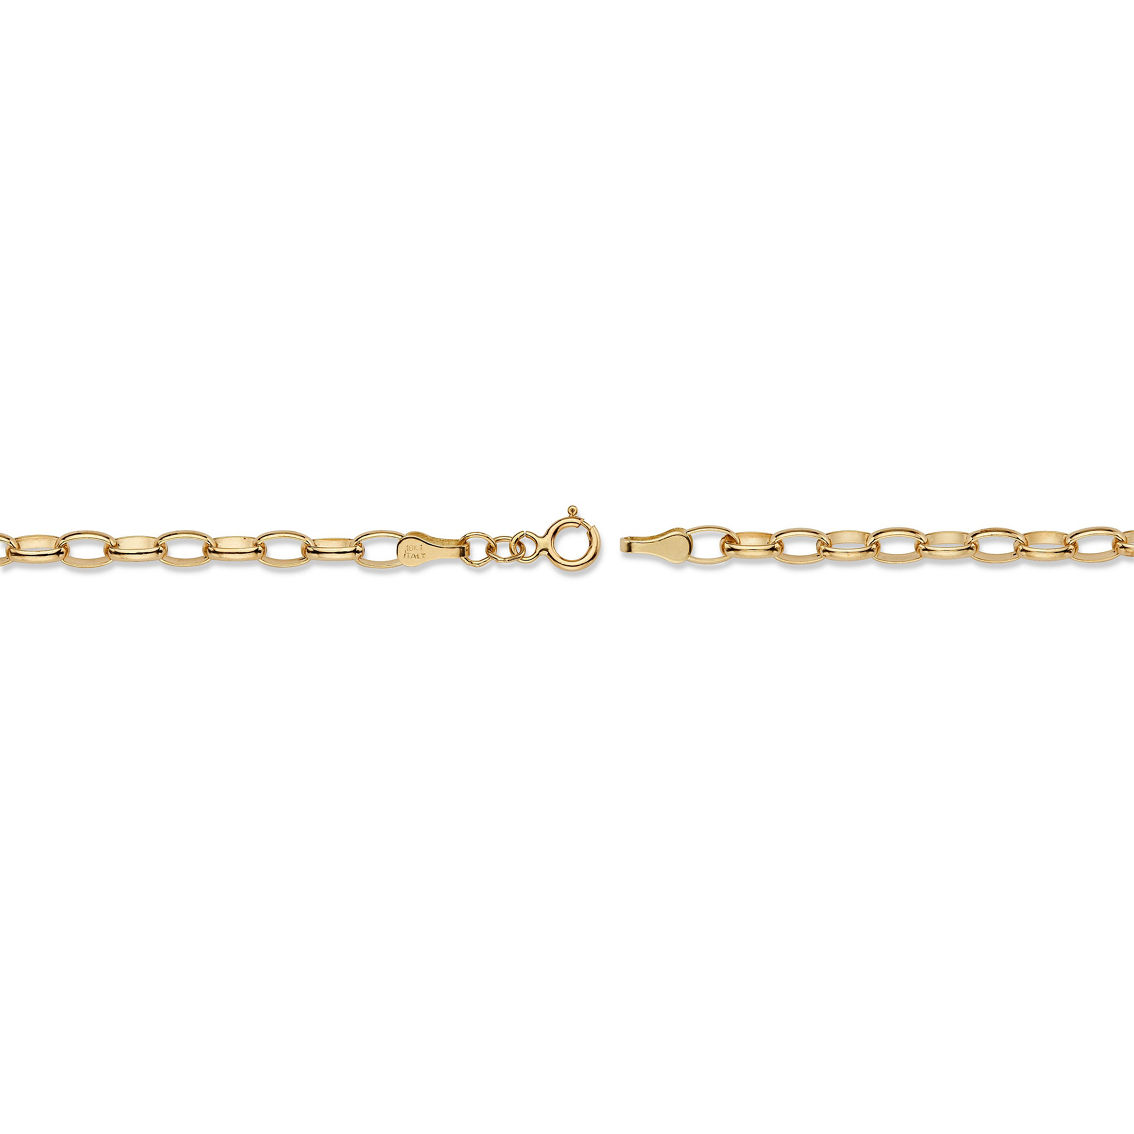 Rolo-Link Bracelet in Solid 10k Gold - Image 2 of 5